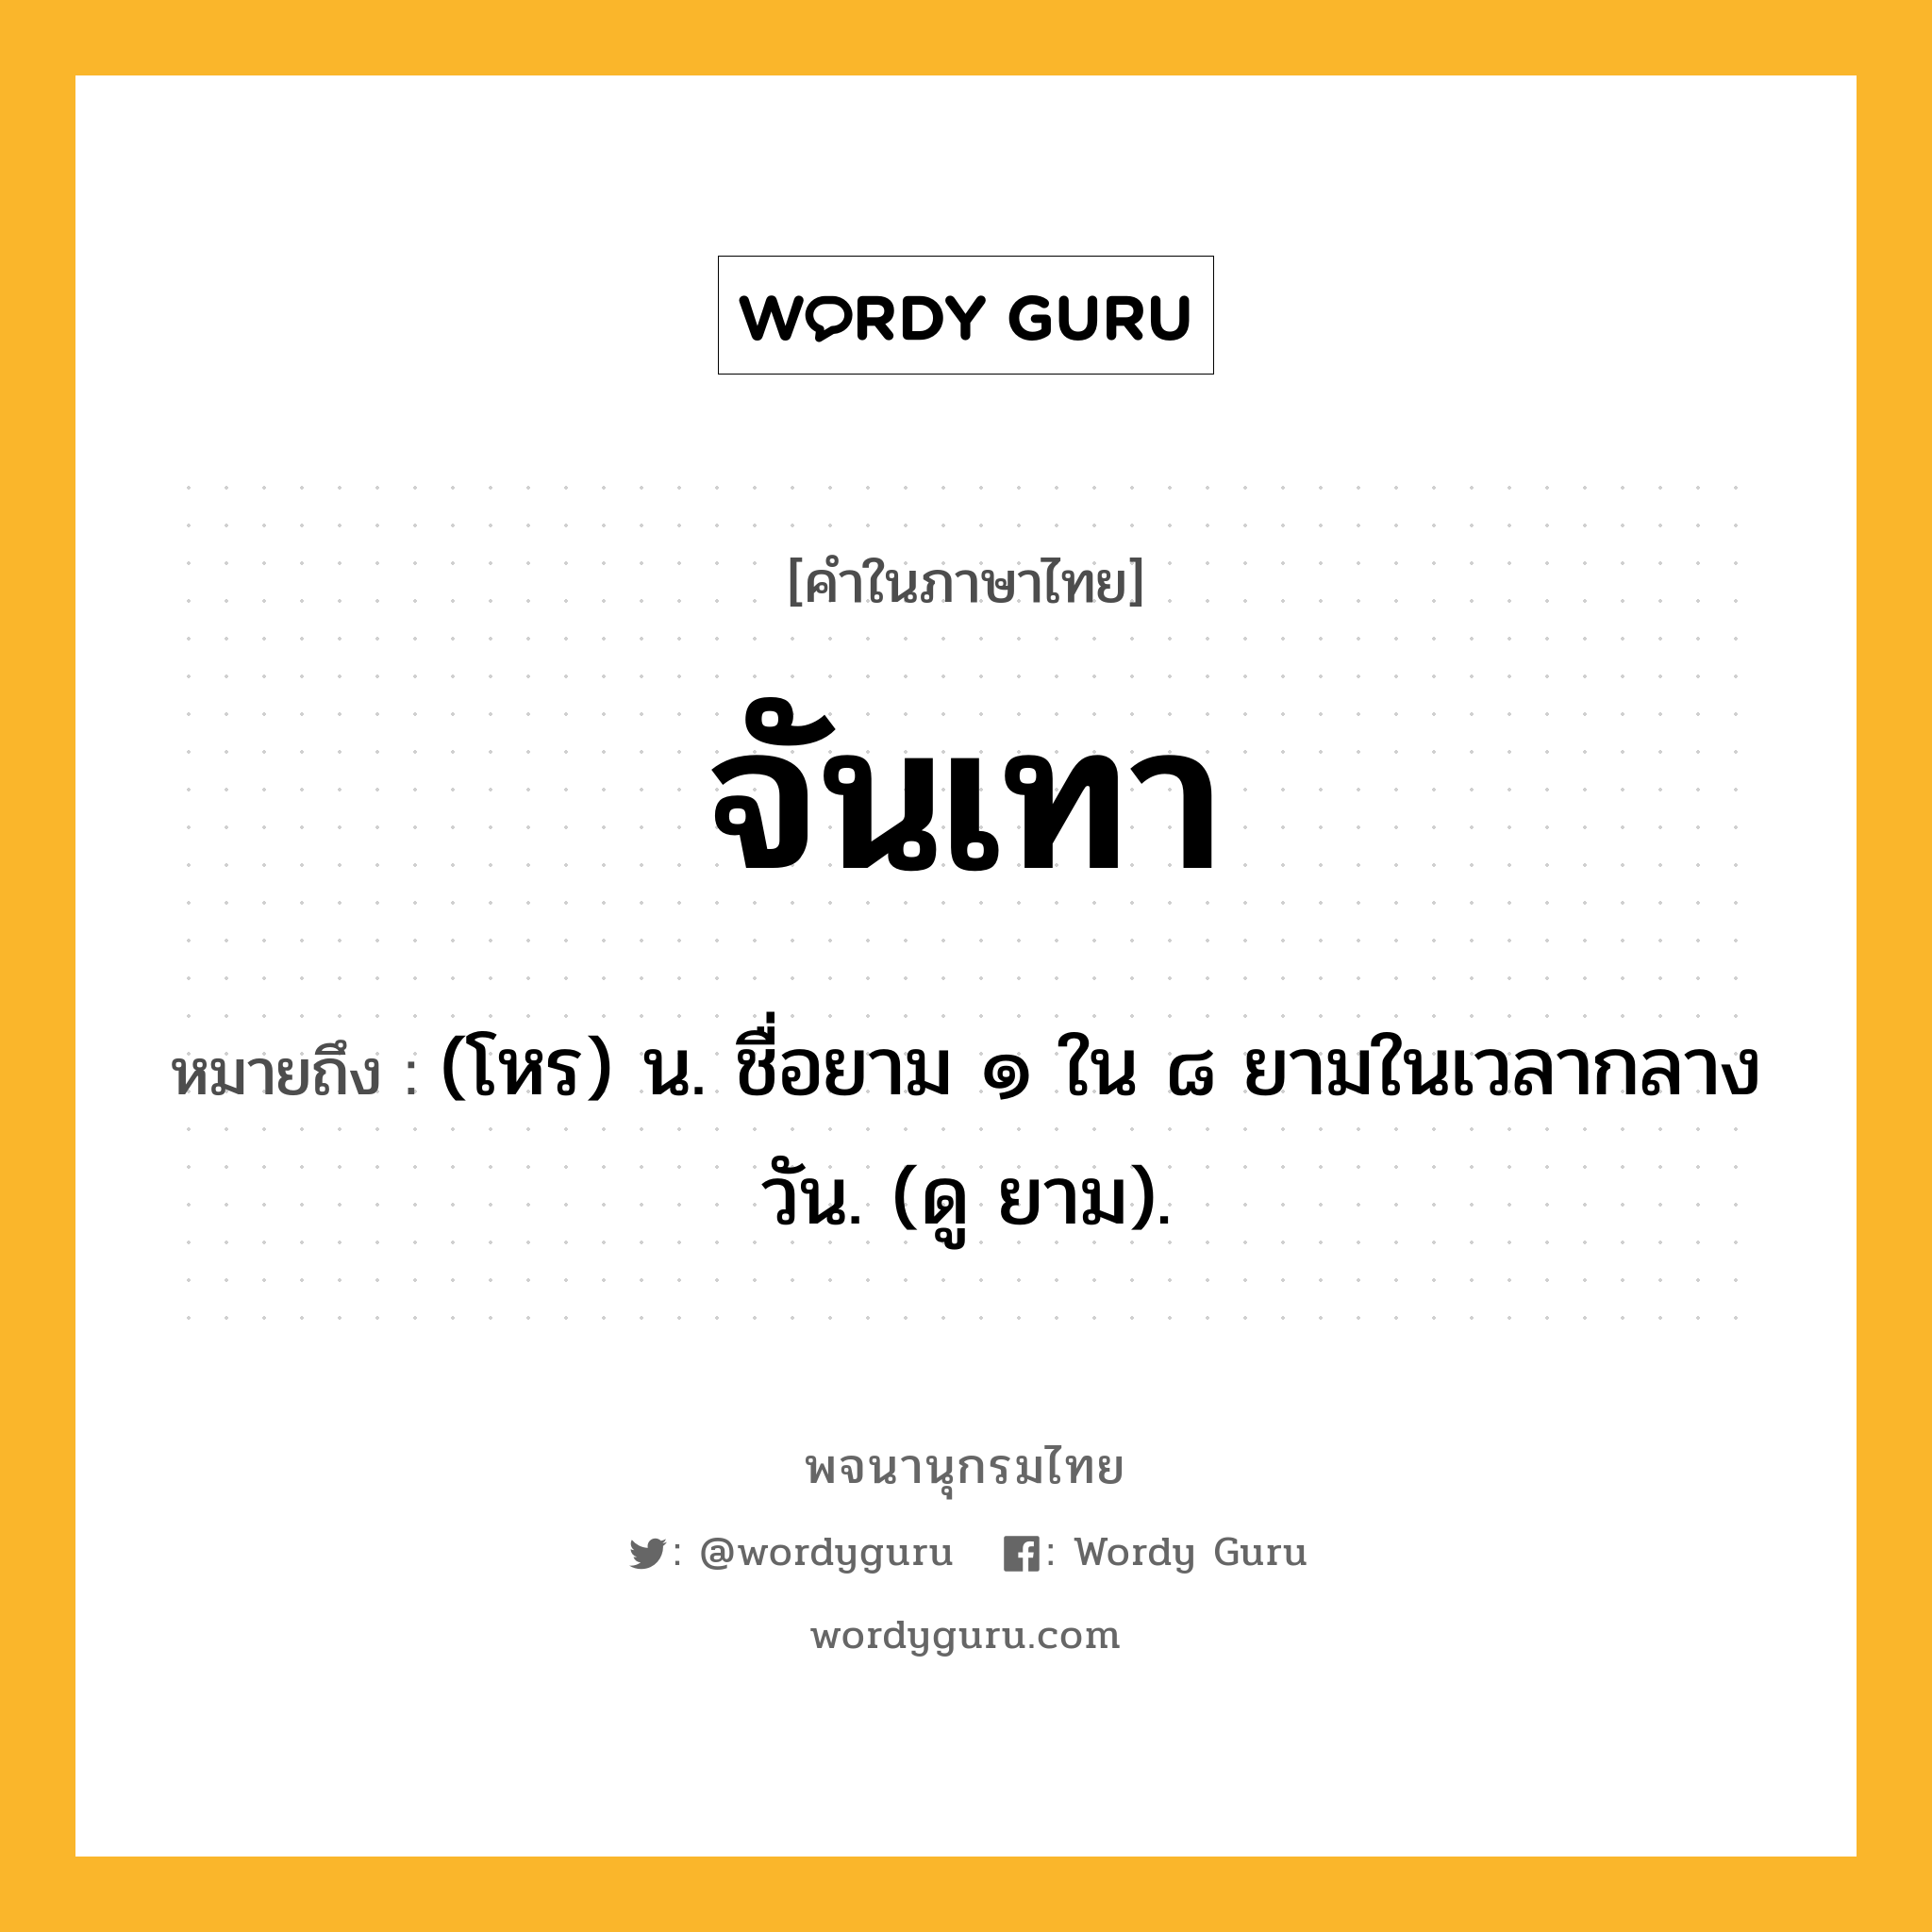 จันเทา หมายถึงอะไร?, คำในภาษาไทย จันเทา หมายถึง (โหร) น. ชื่อยาม ๑ ใน ๘ ยามในเวลากลางวัน. (ดู ยาม).